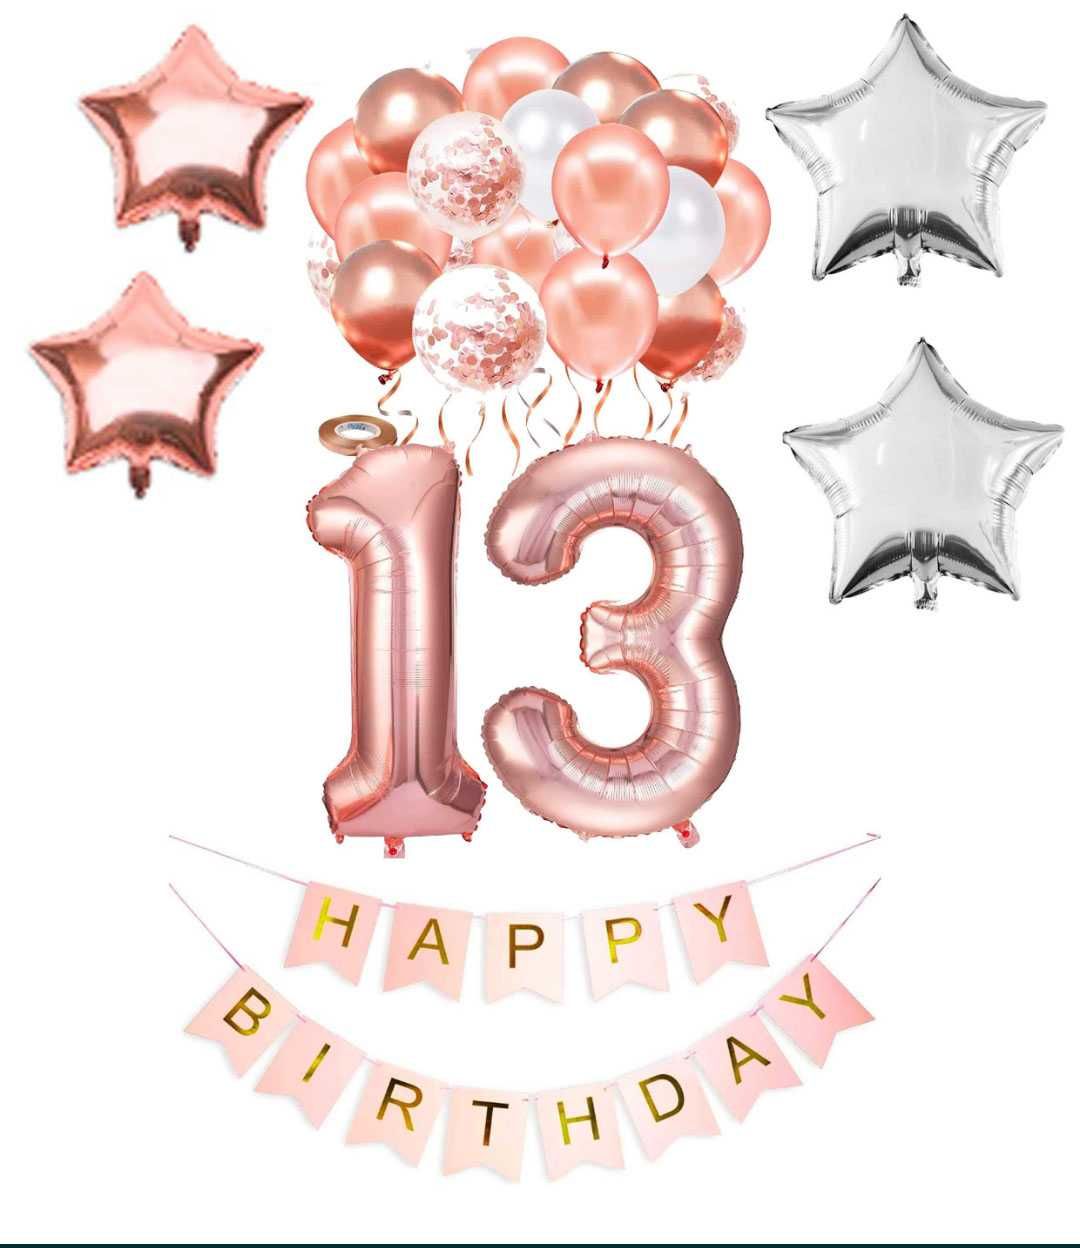 Zestaw balonów na urodziny "13"